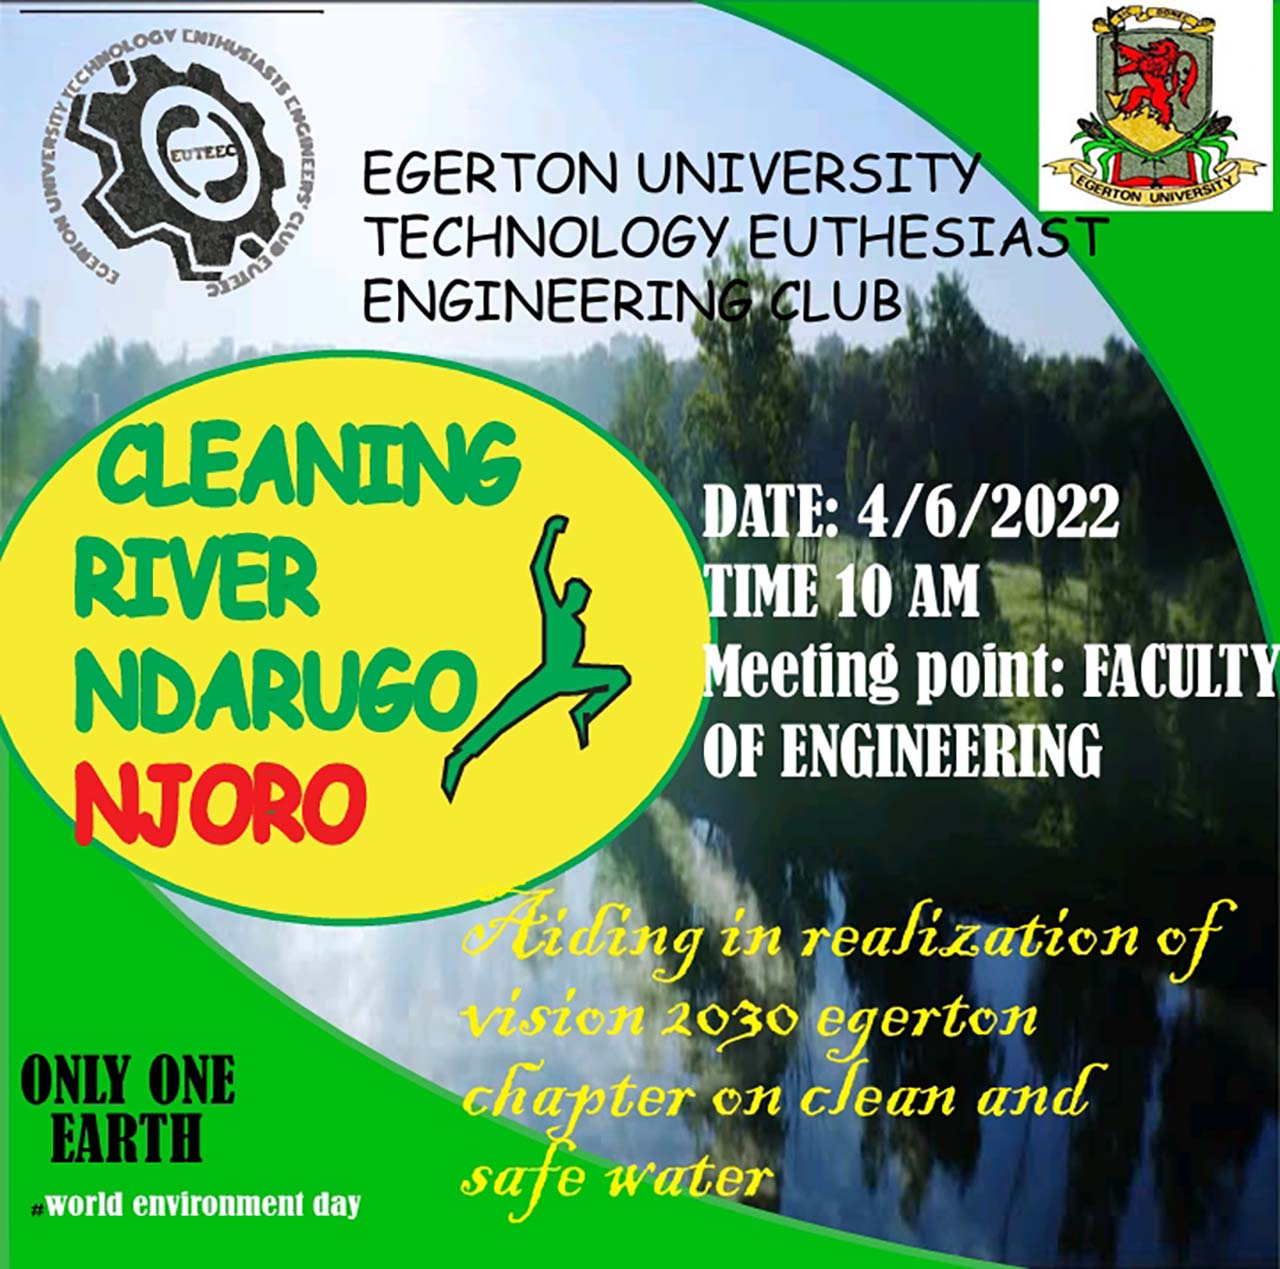 Cleaning River Ndarugo - Njoro